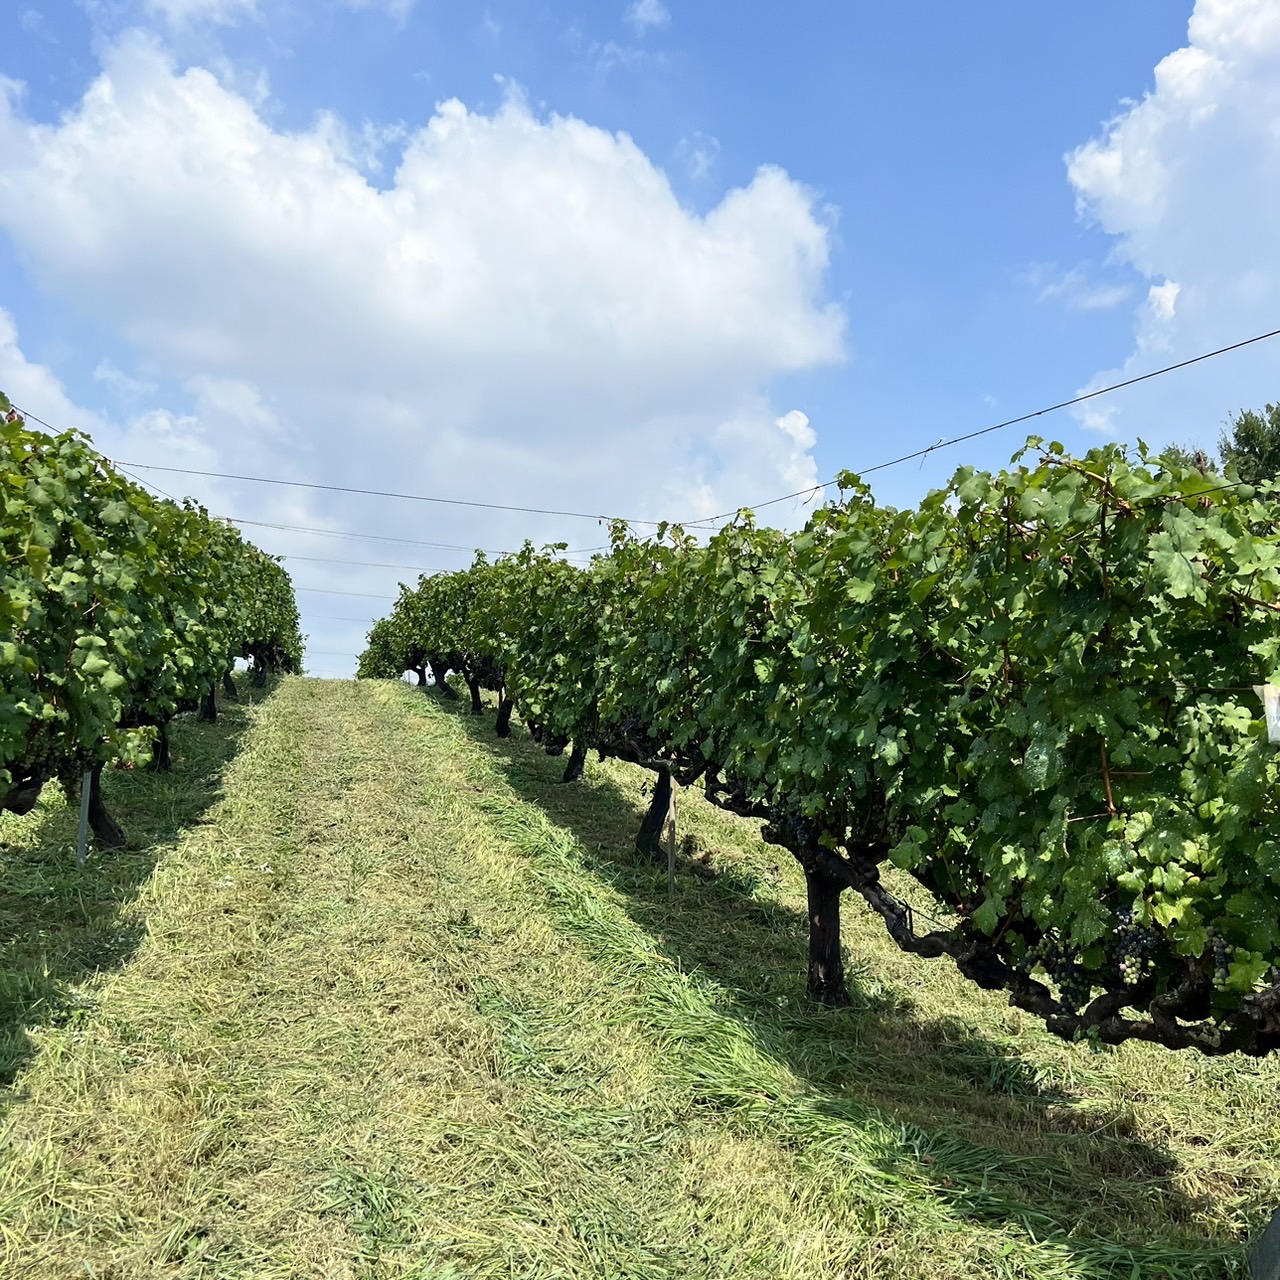 ブドウ畑から始まる職人ワイン造り ブドウ栽培から仕込みまで、小規模